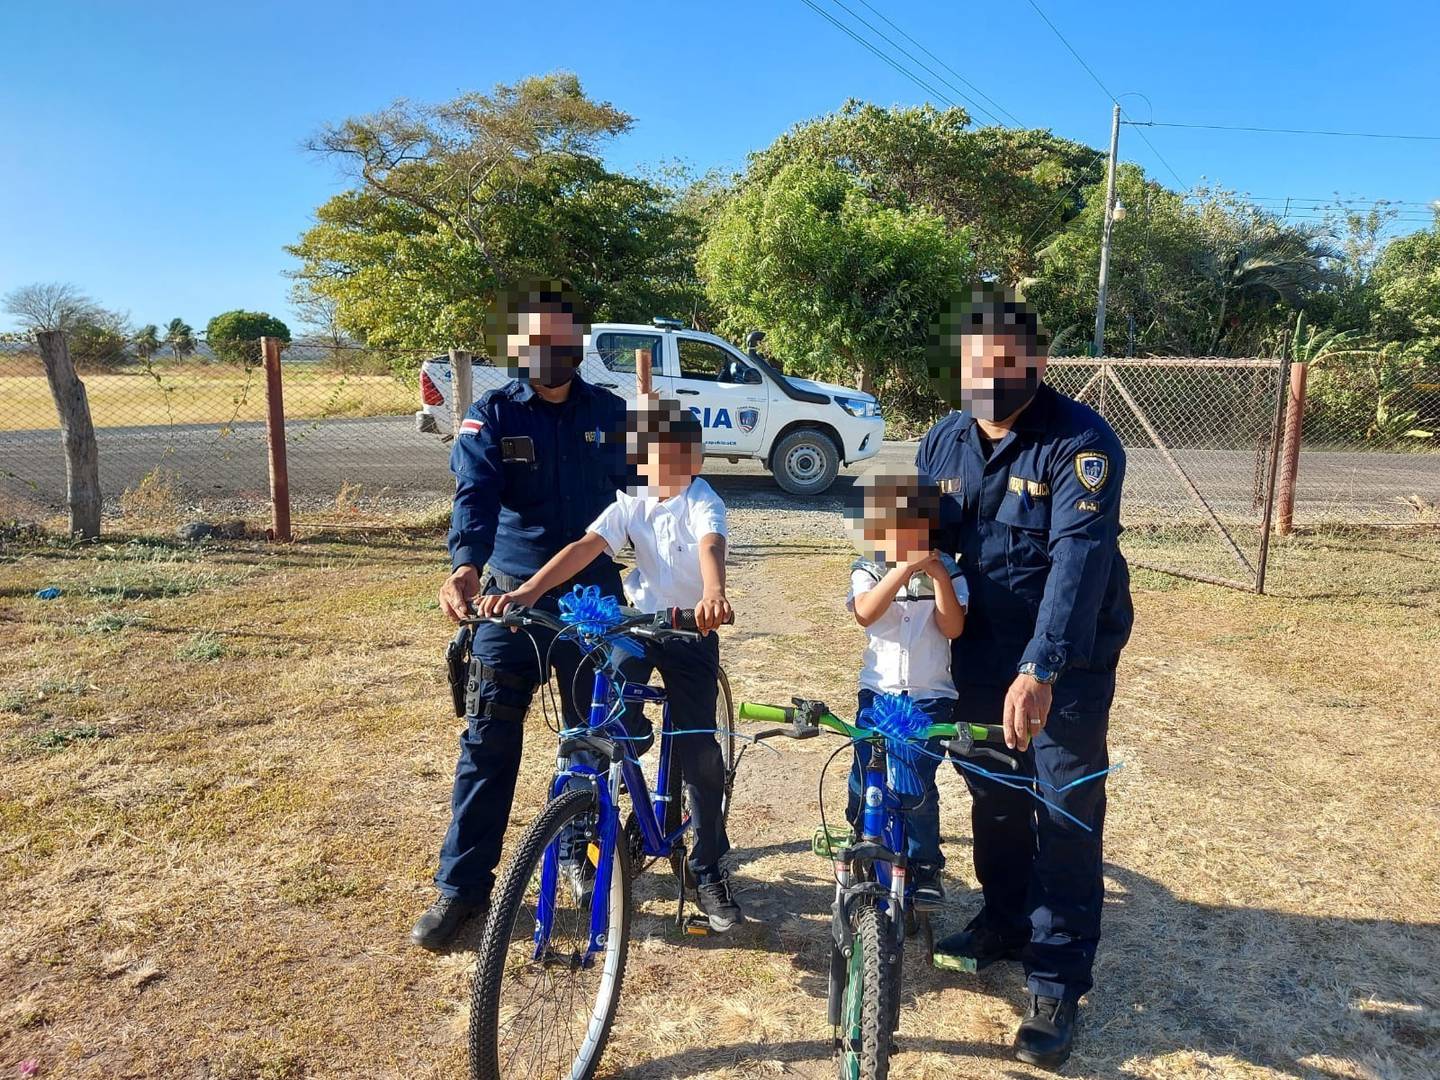 Policías y vecinos de Bagaces se unieron para regalarles bicicletas a dos niños. Foto cortesía Wagner Pichardo.